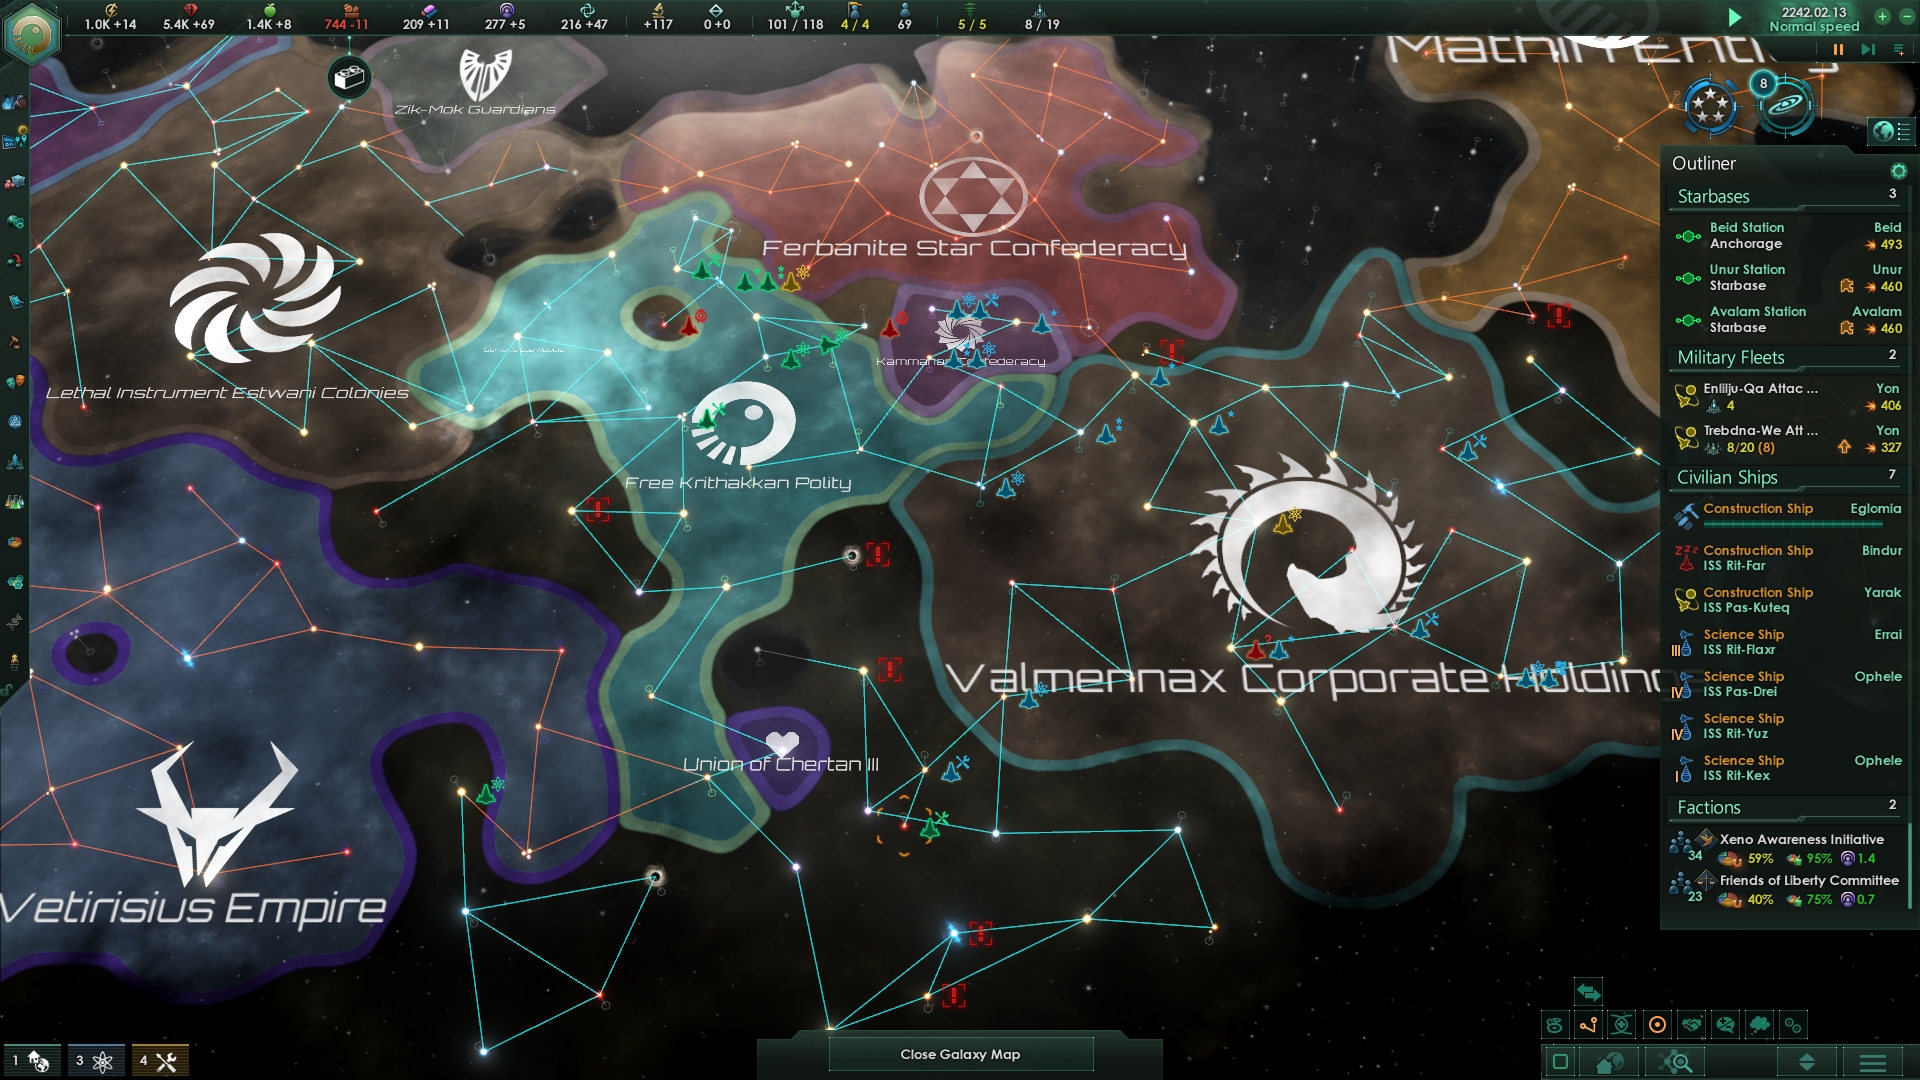 stellaris federation download free